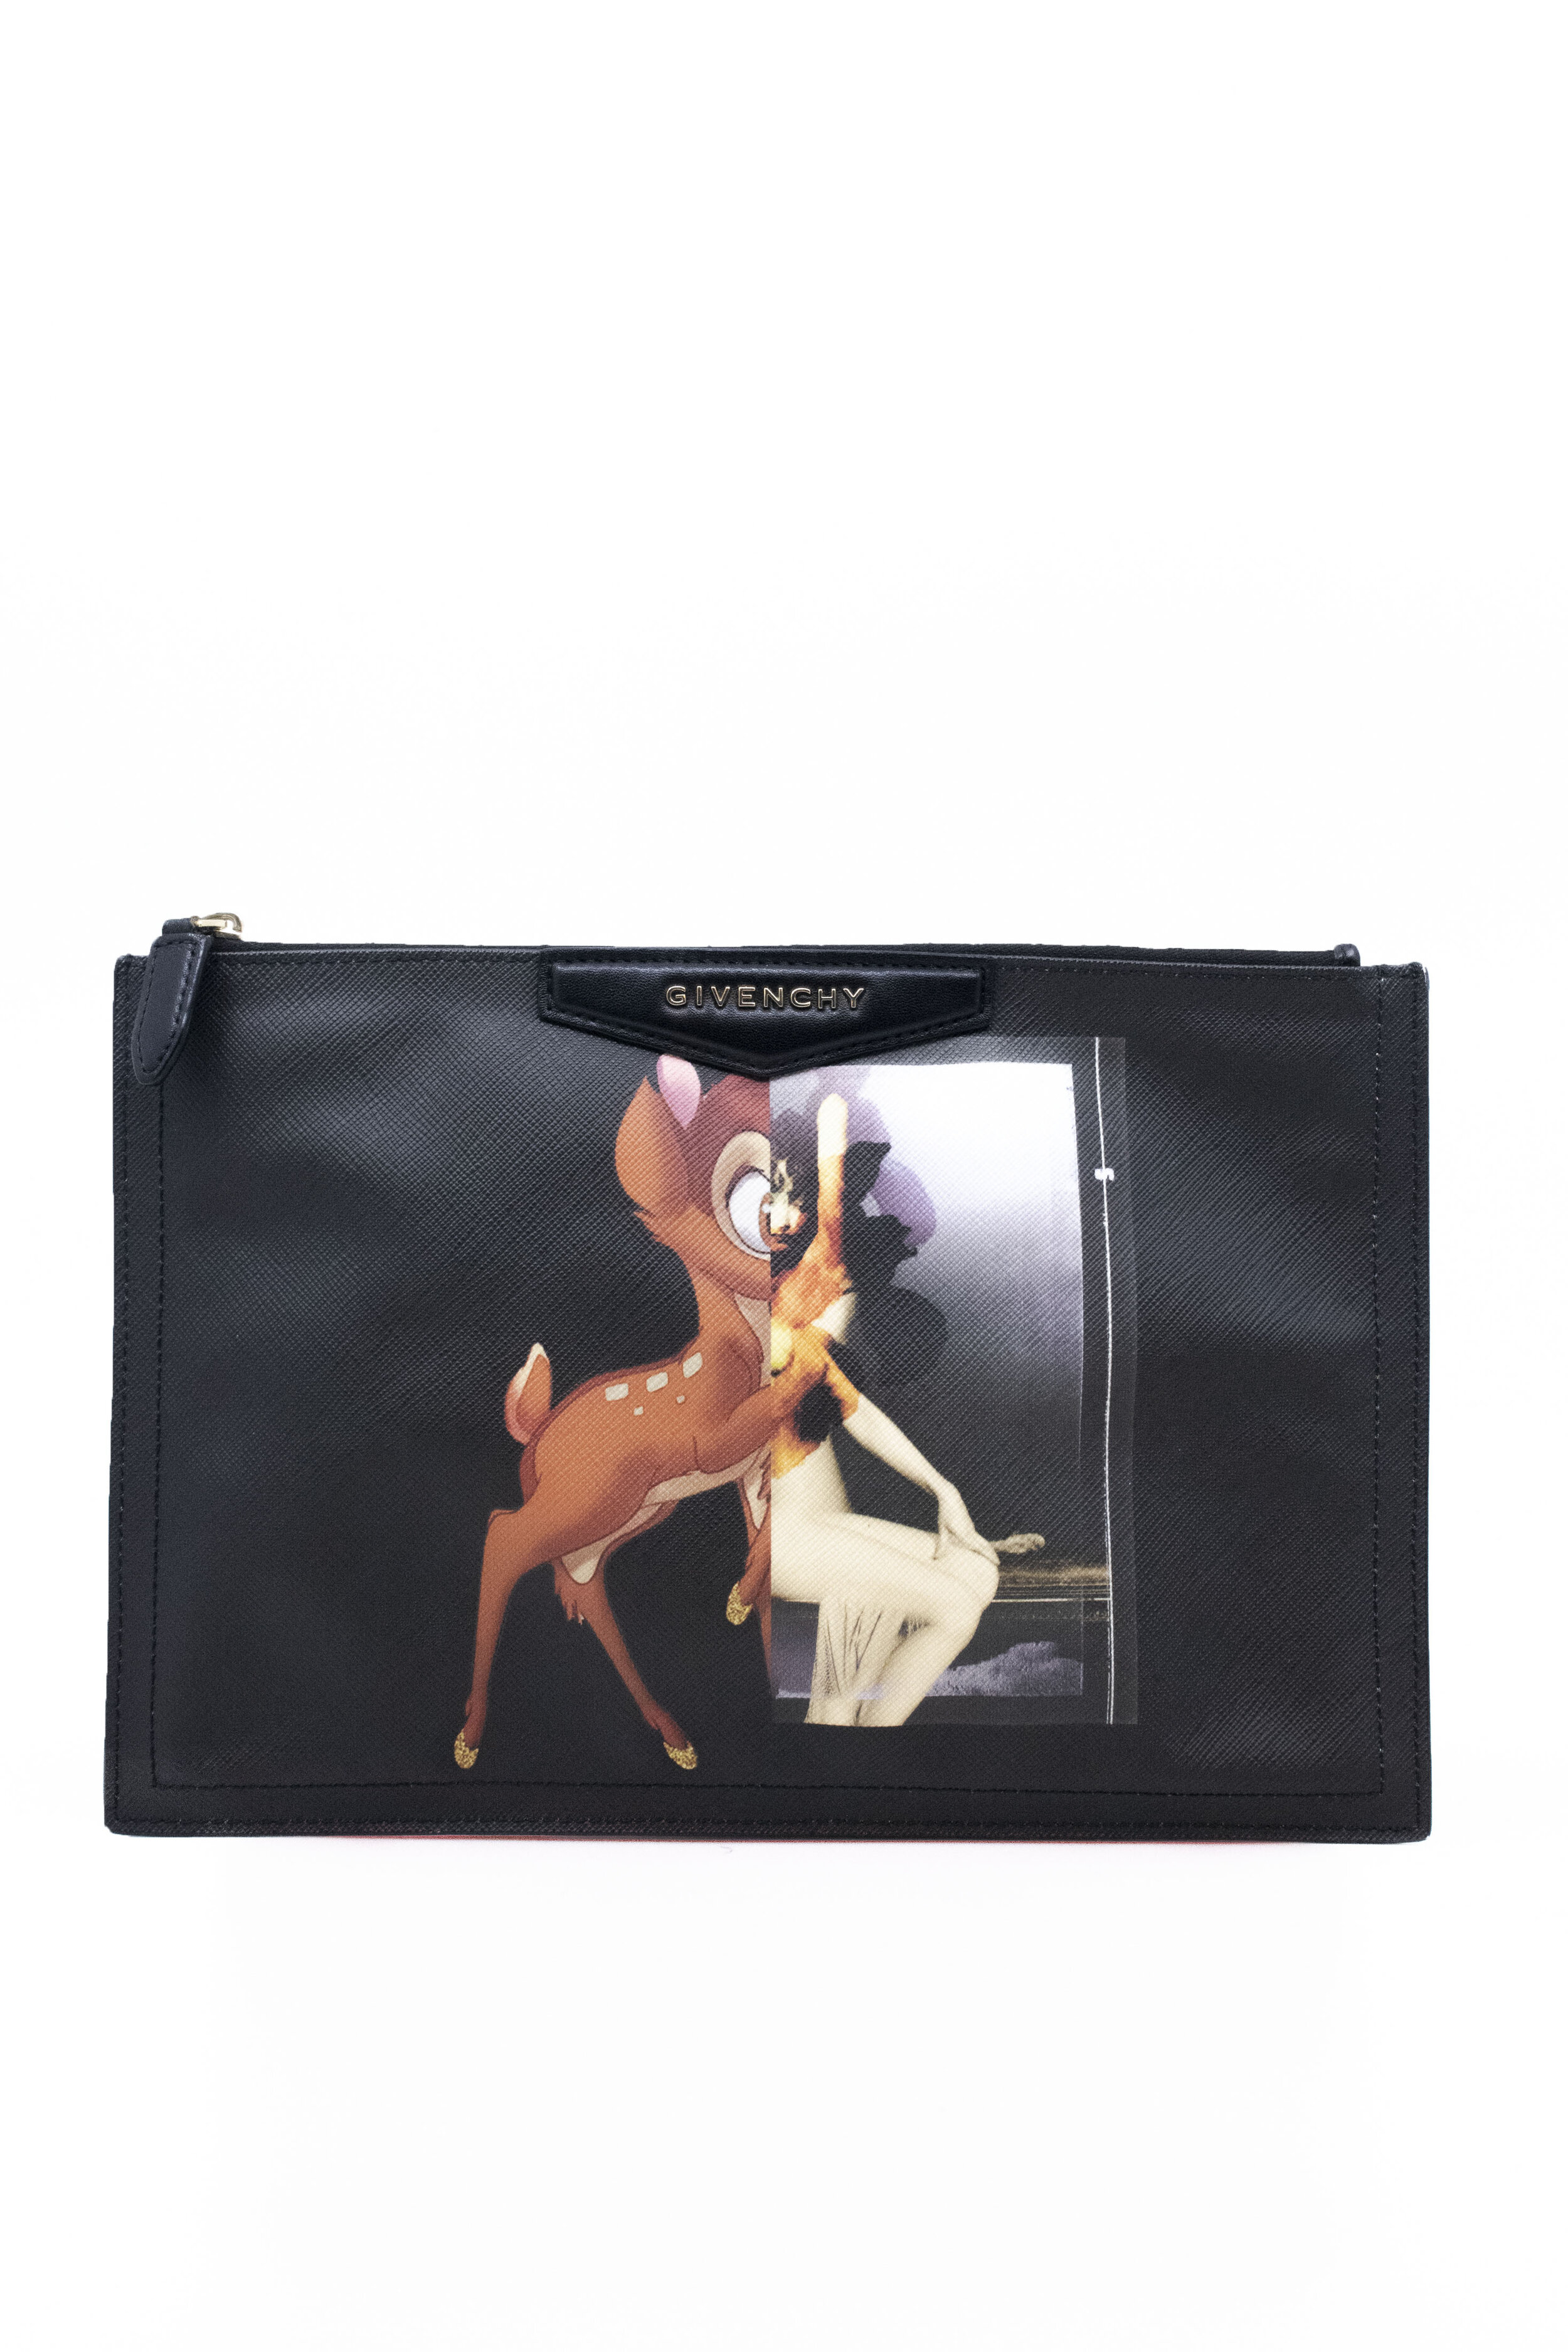 Givenchy Antigona Bambi Clutch 